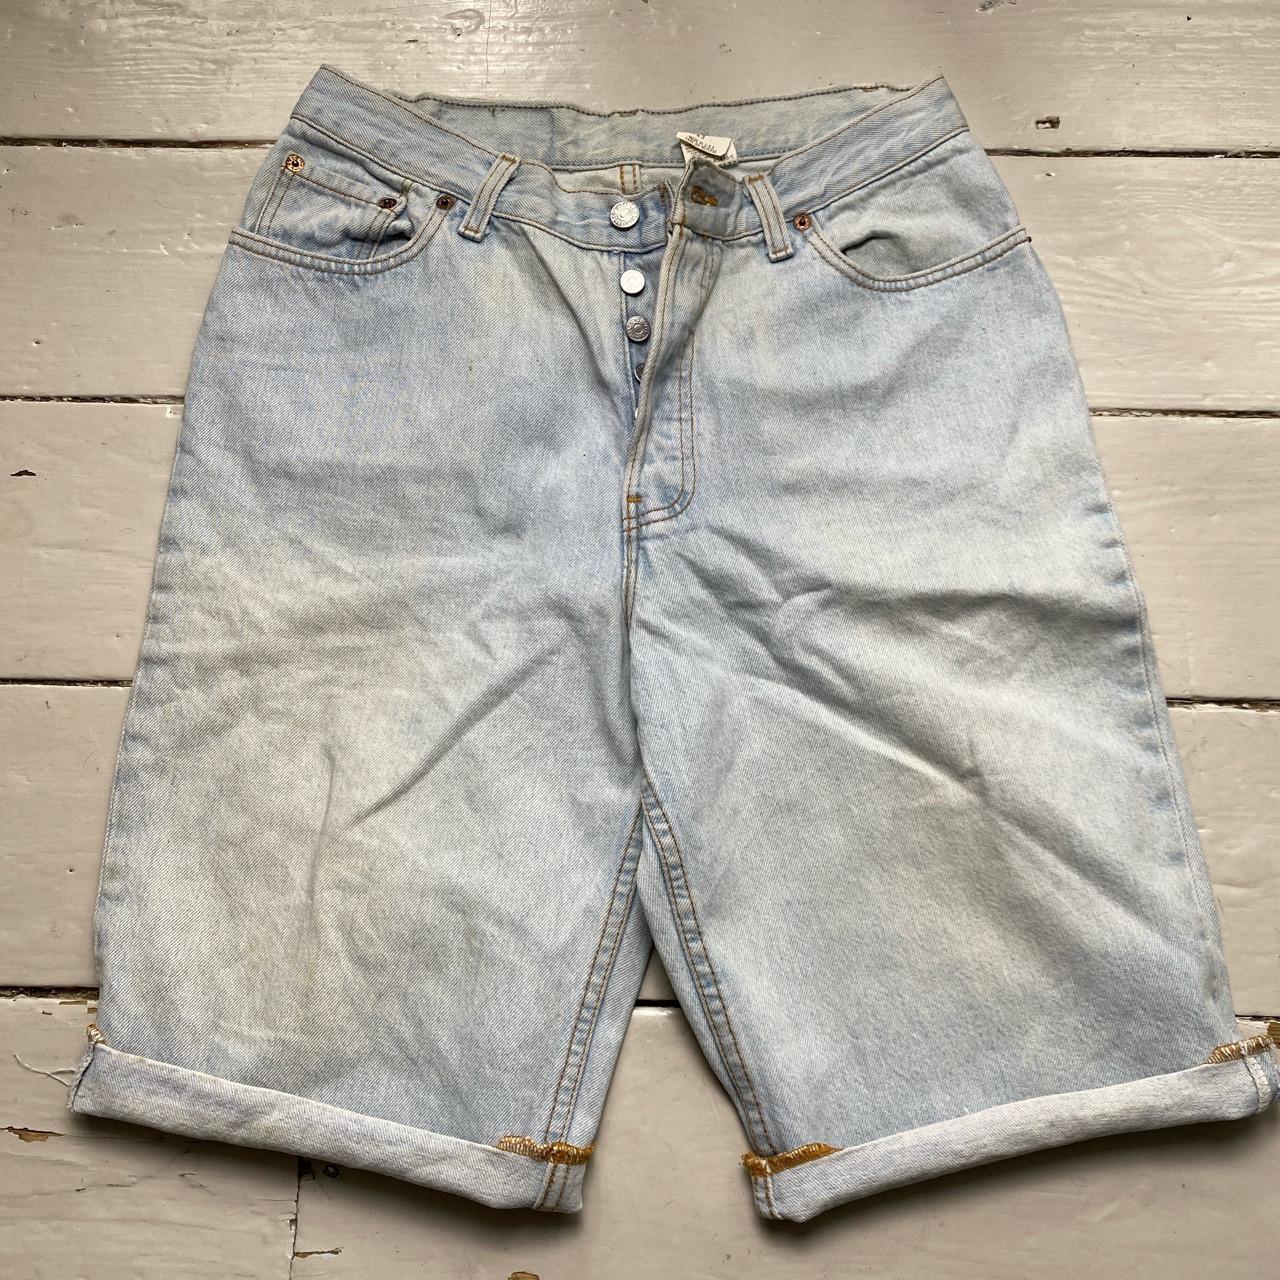 Levis 37501-0133 Vintage Made in USA Light Blue Jean Short Jorts